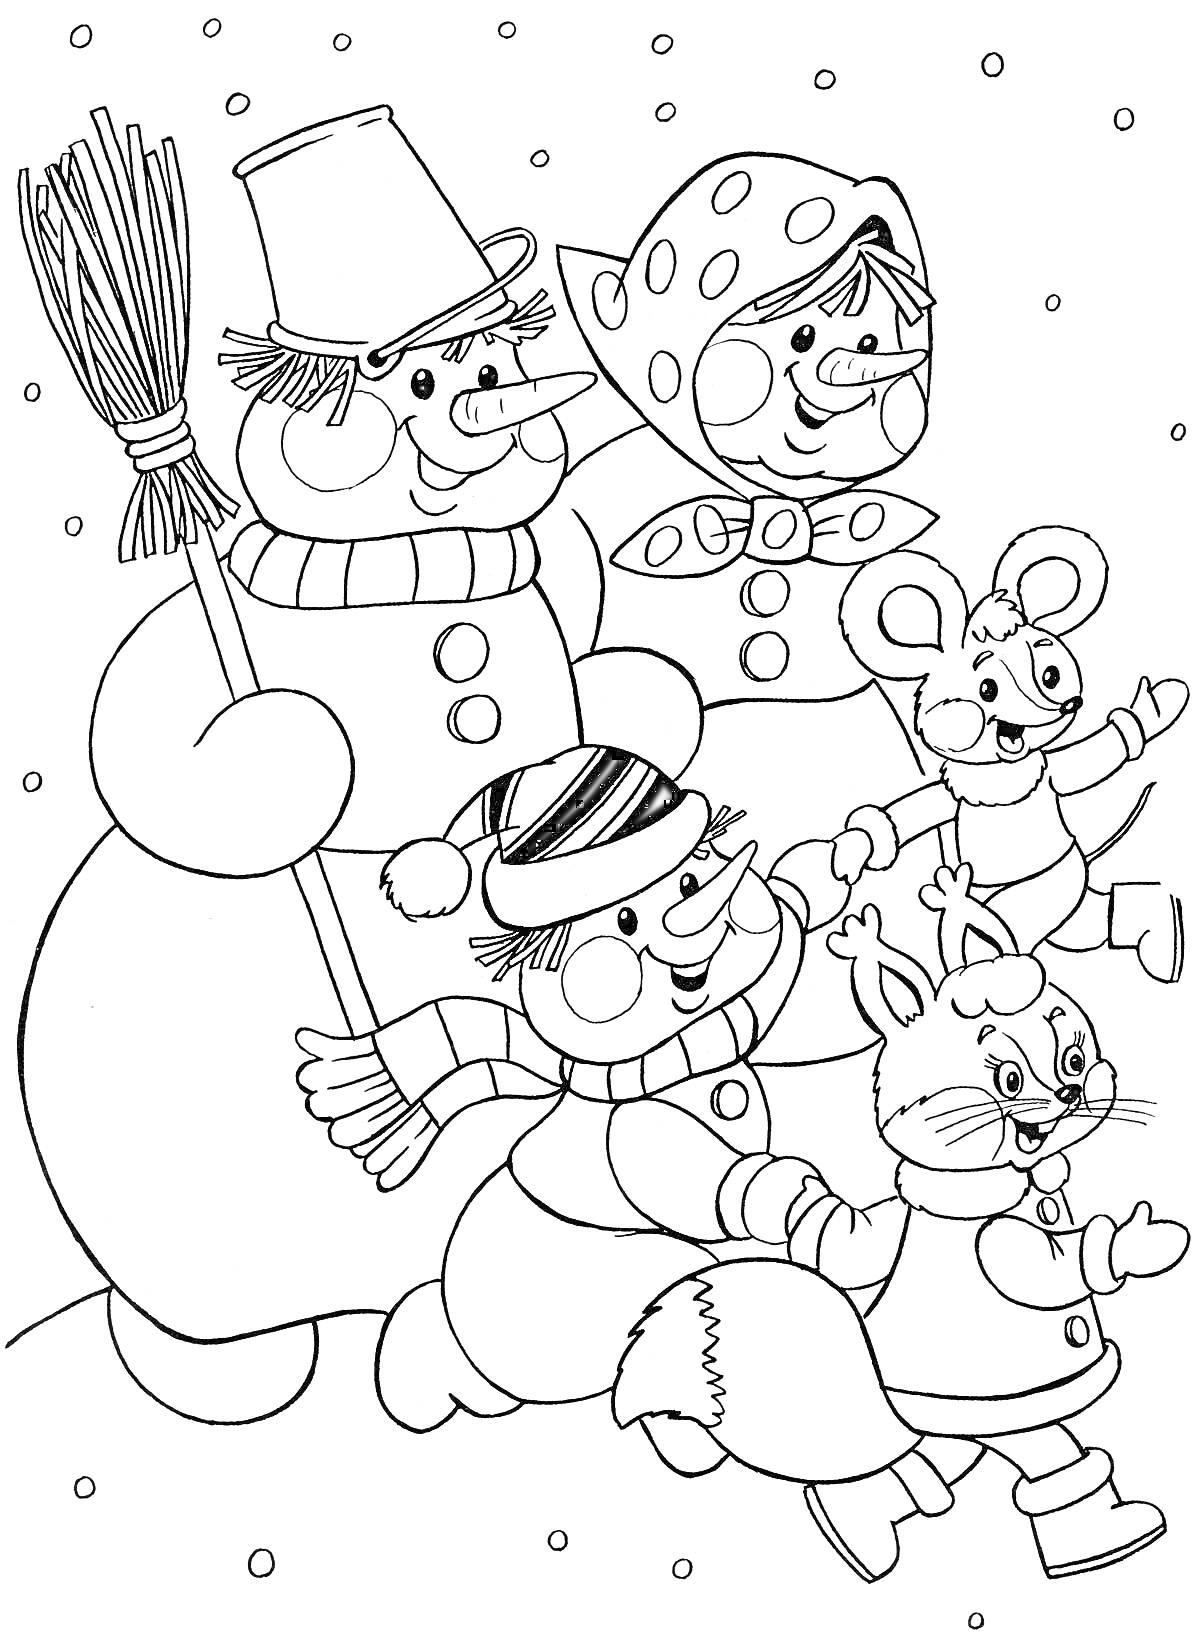 Снеговик с тремя сказочными друзьями (мышь, заяц, персонаж в шапке и галстуке-бабочке) на снежном фоне.